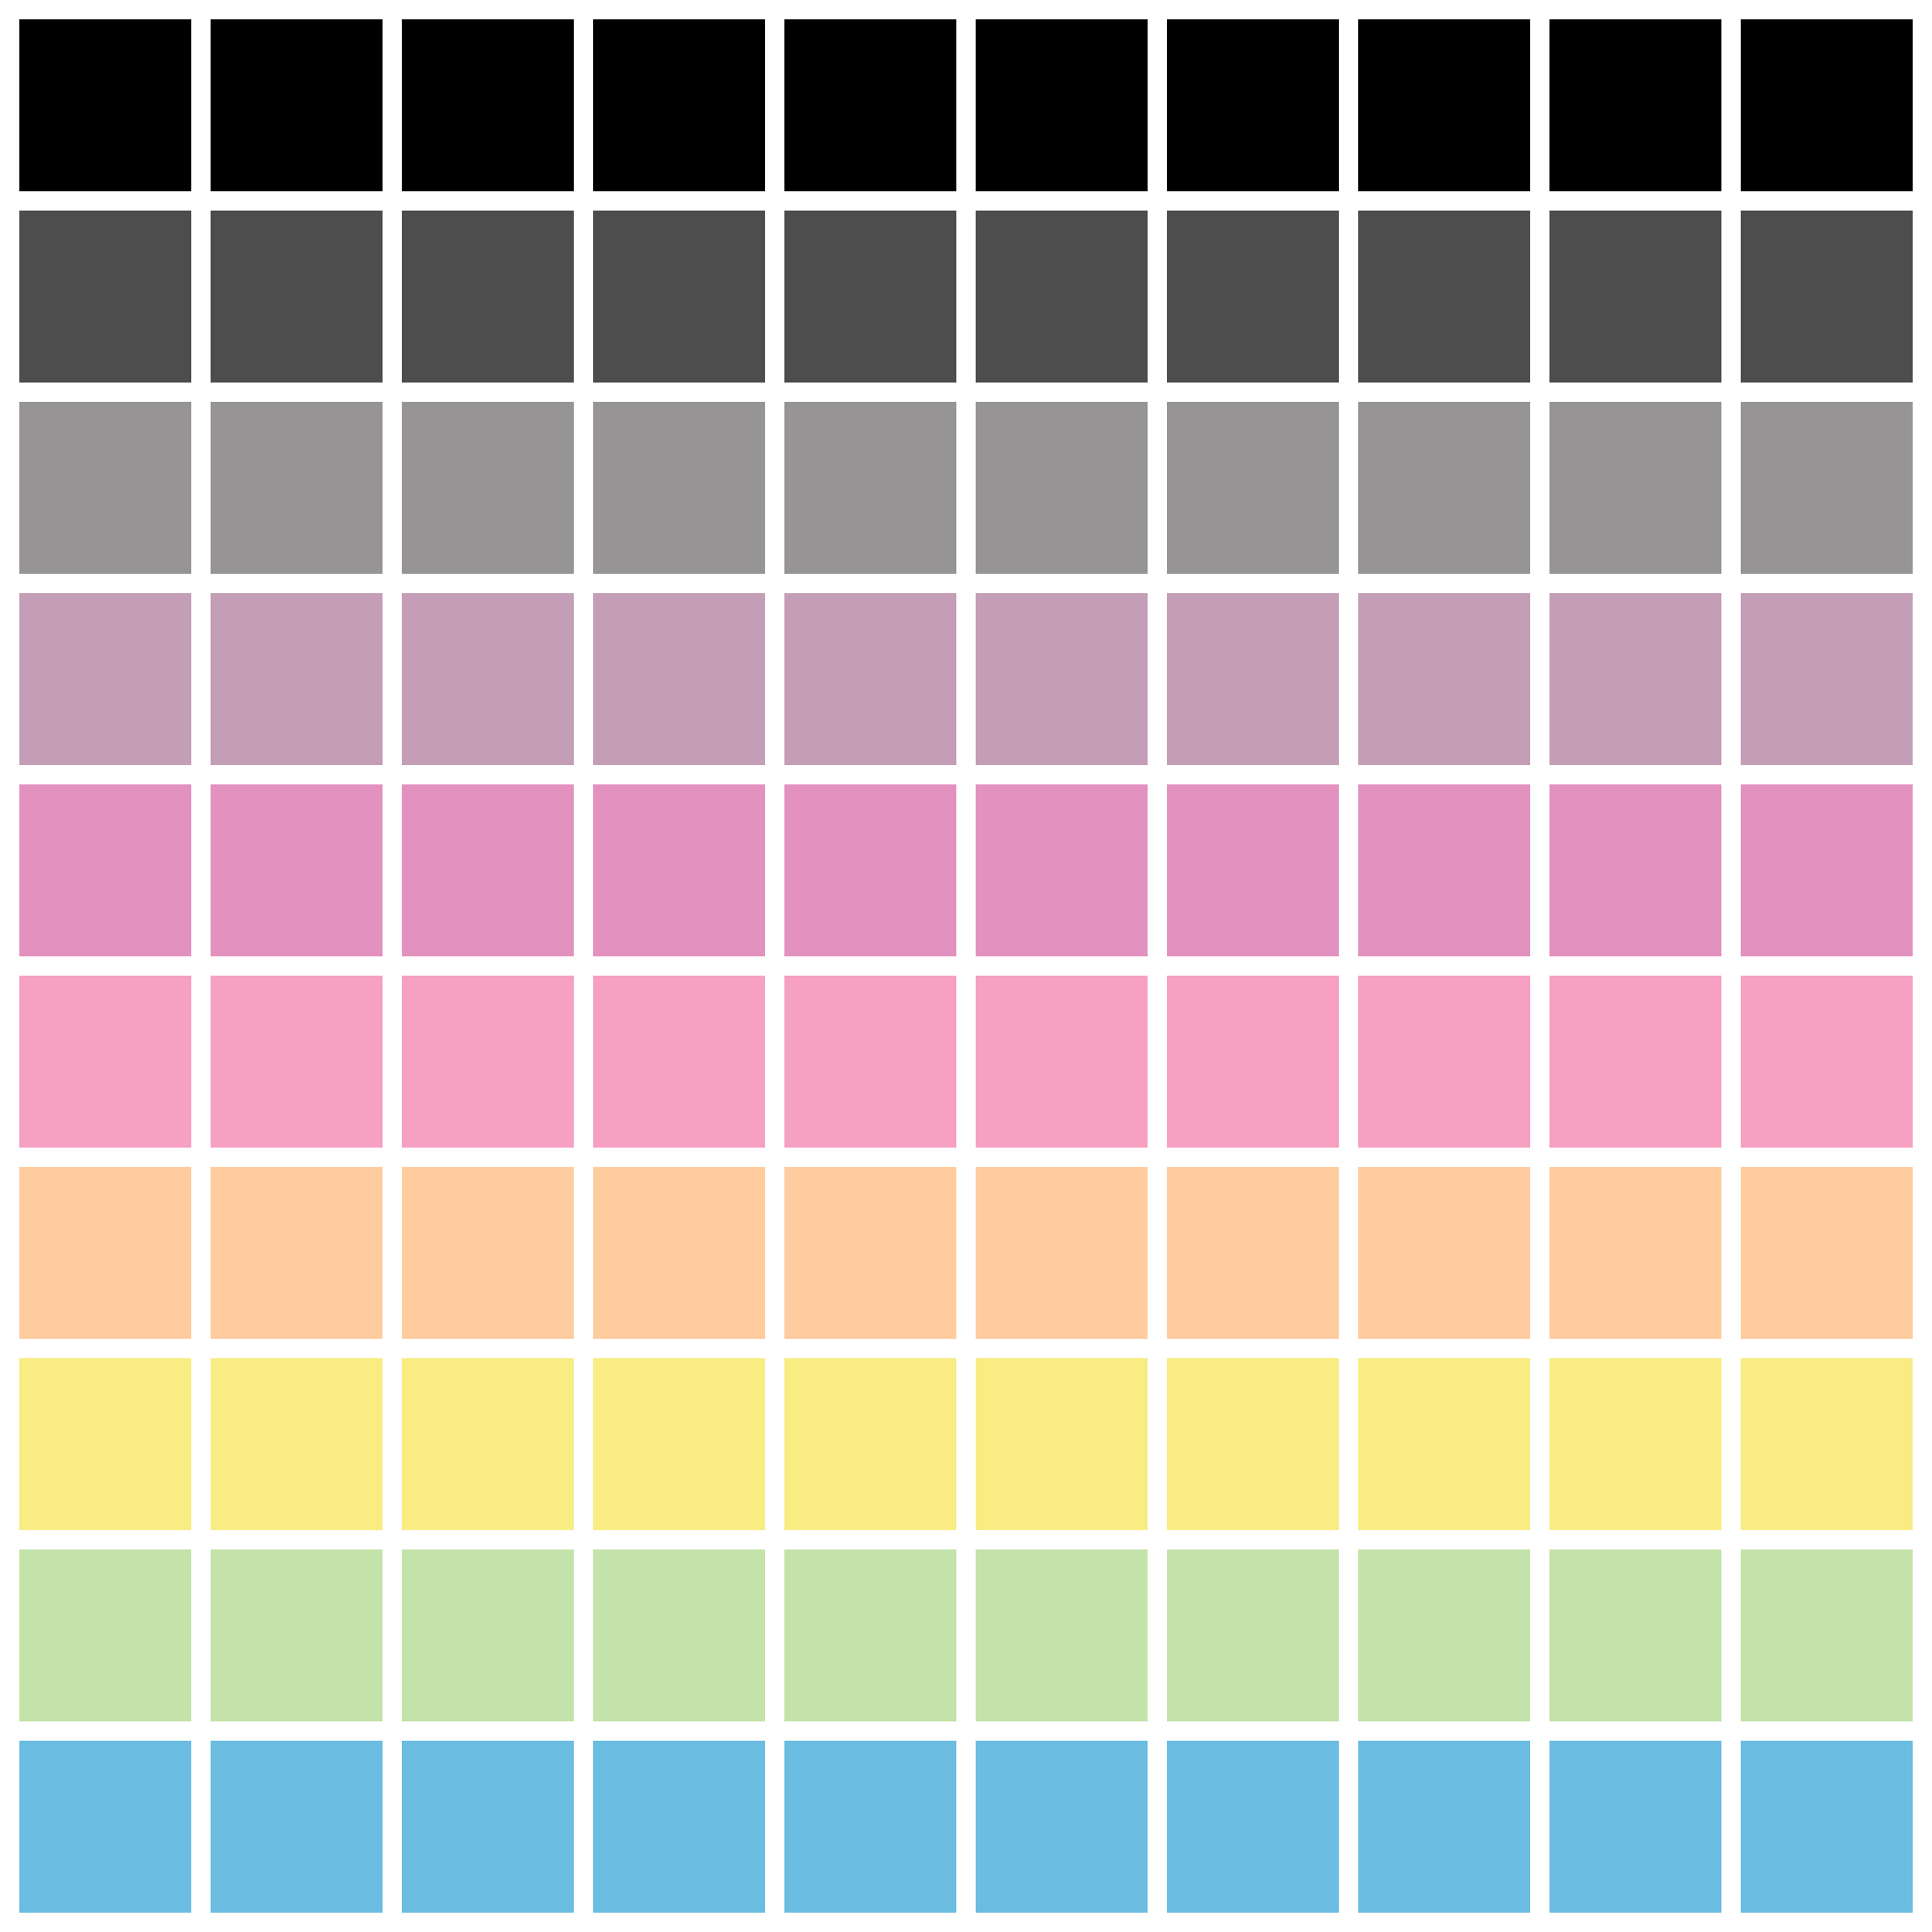 100 quadrados de tamanhos iguais dispostos em 10 colunas e 10 linhas. As linhas horizontais possuem quadrados de cores iguais e sólidas entre si. Porém, cada linha muda de cor, de forma que há quase um degradê entre as cores preta, cinza, rosa, amarela e azul.